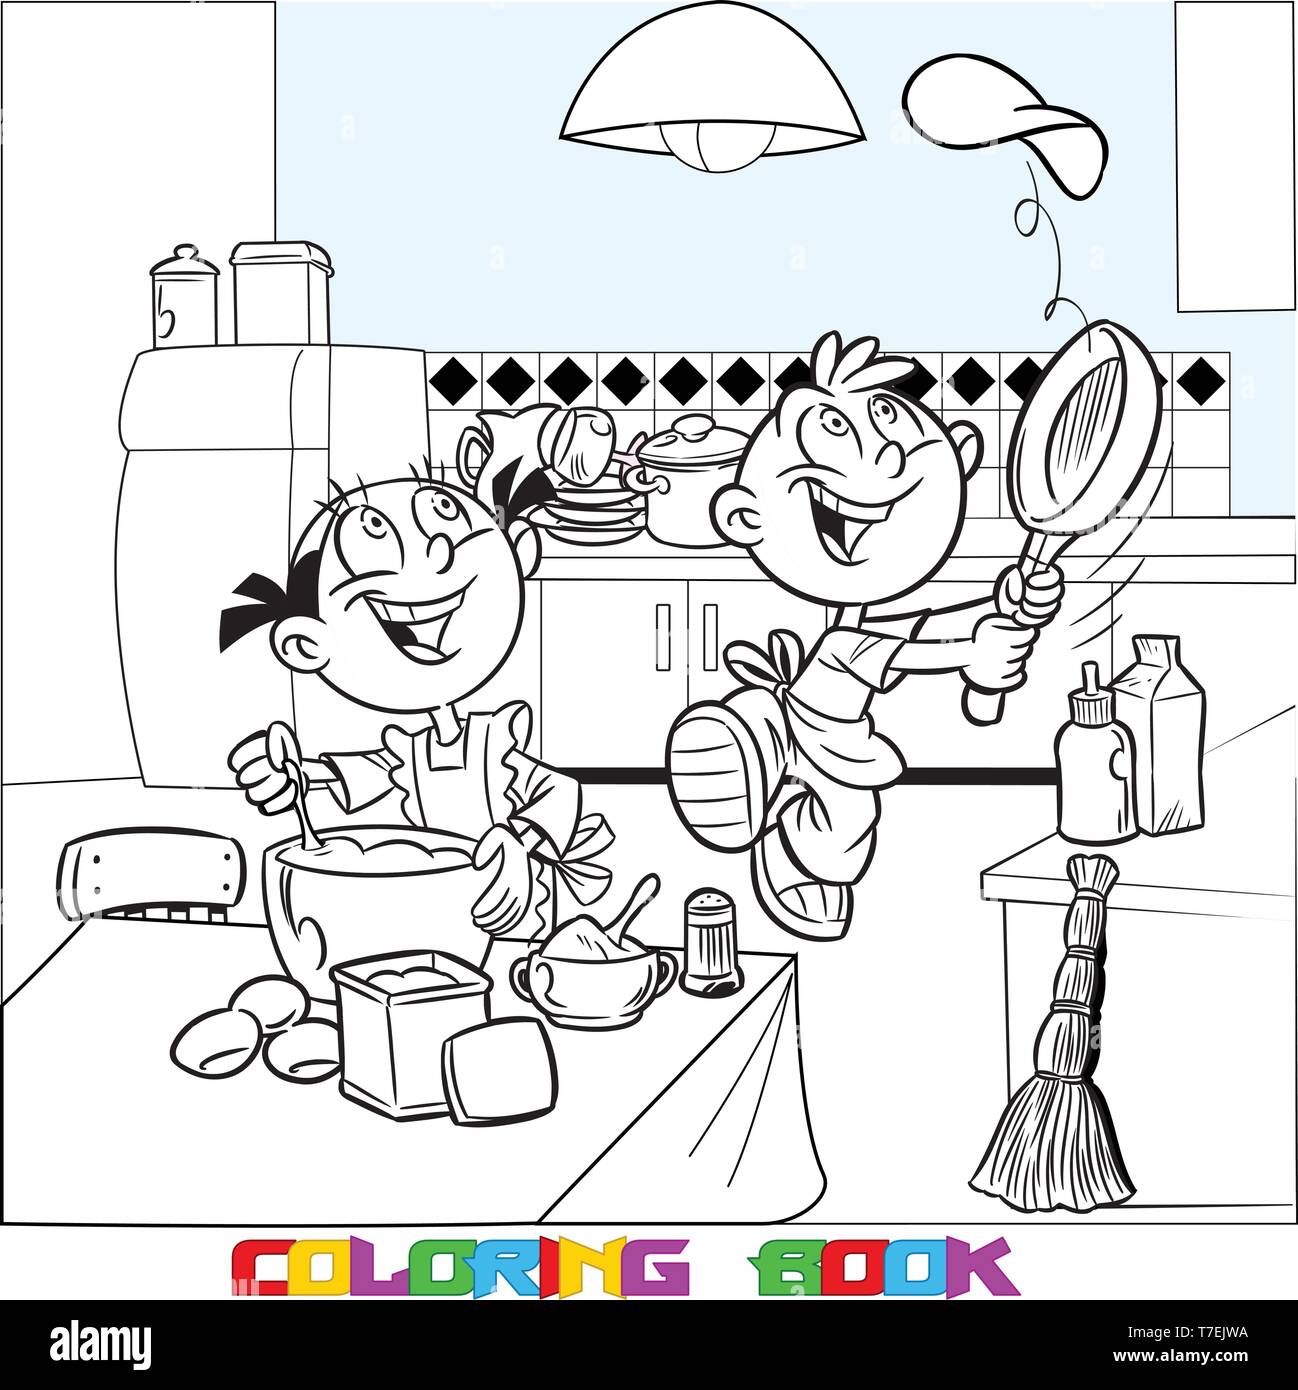 In Vector Illustration, Cartoon Mädchen und Jungen essen in der Küche. Spaß Kinder backen Pfannkuchen. Ist ein schwarzer Umriss für ein Malbuch. Stock Vektor